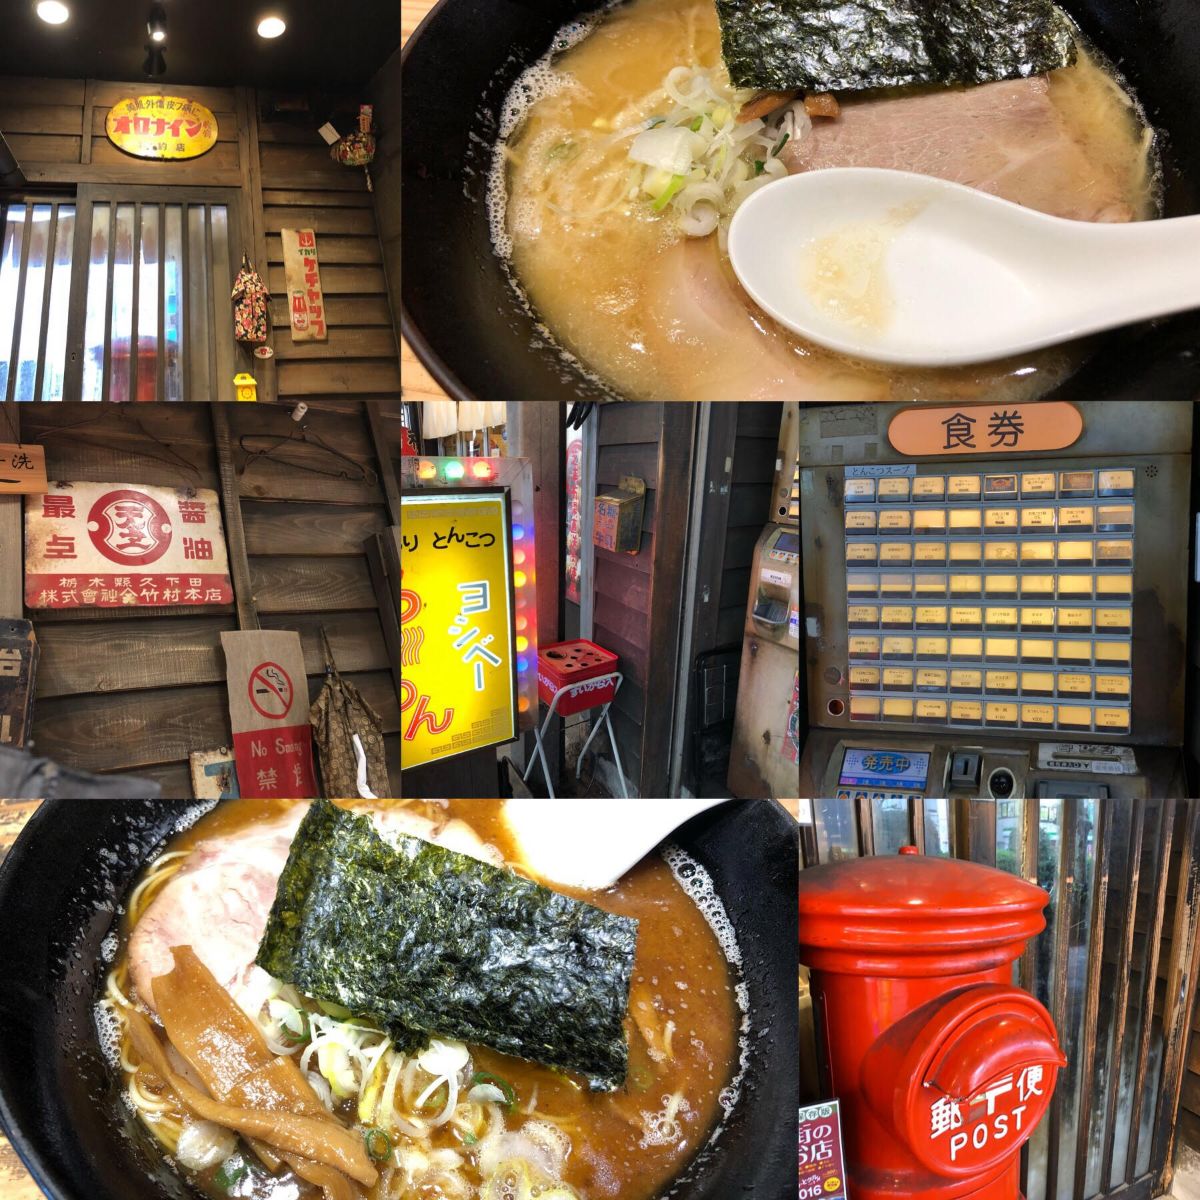 錦糸町に行ったら食べたくなるラーメンは魚介レトロ系のヨシベー